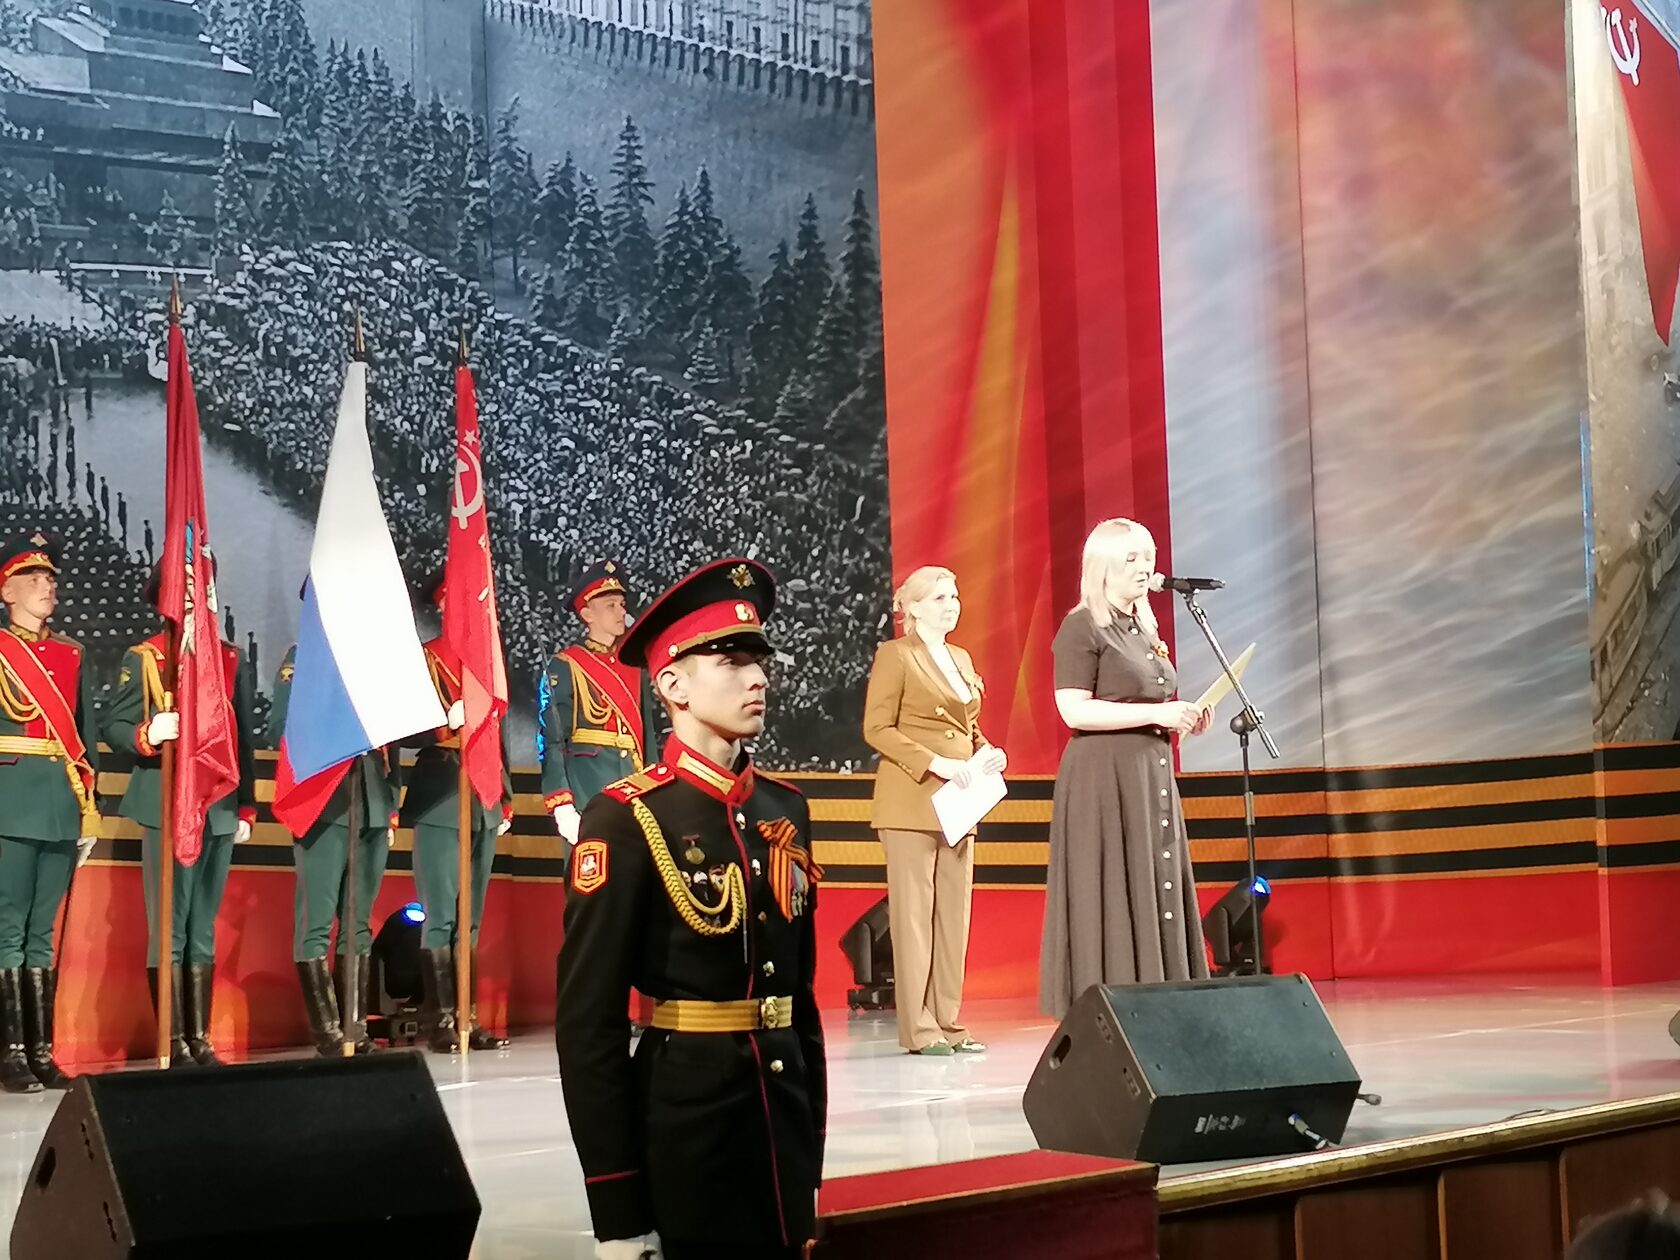 большой конференц зал правительства москвы